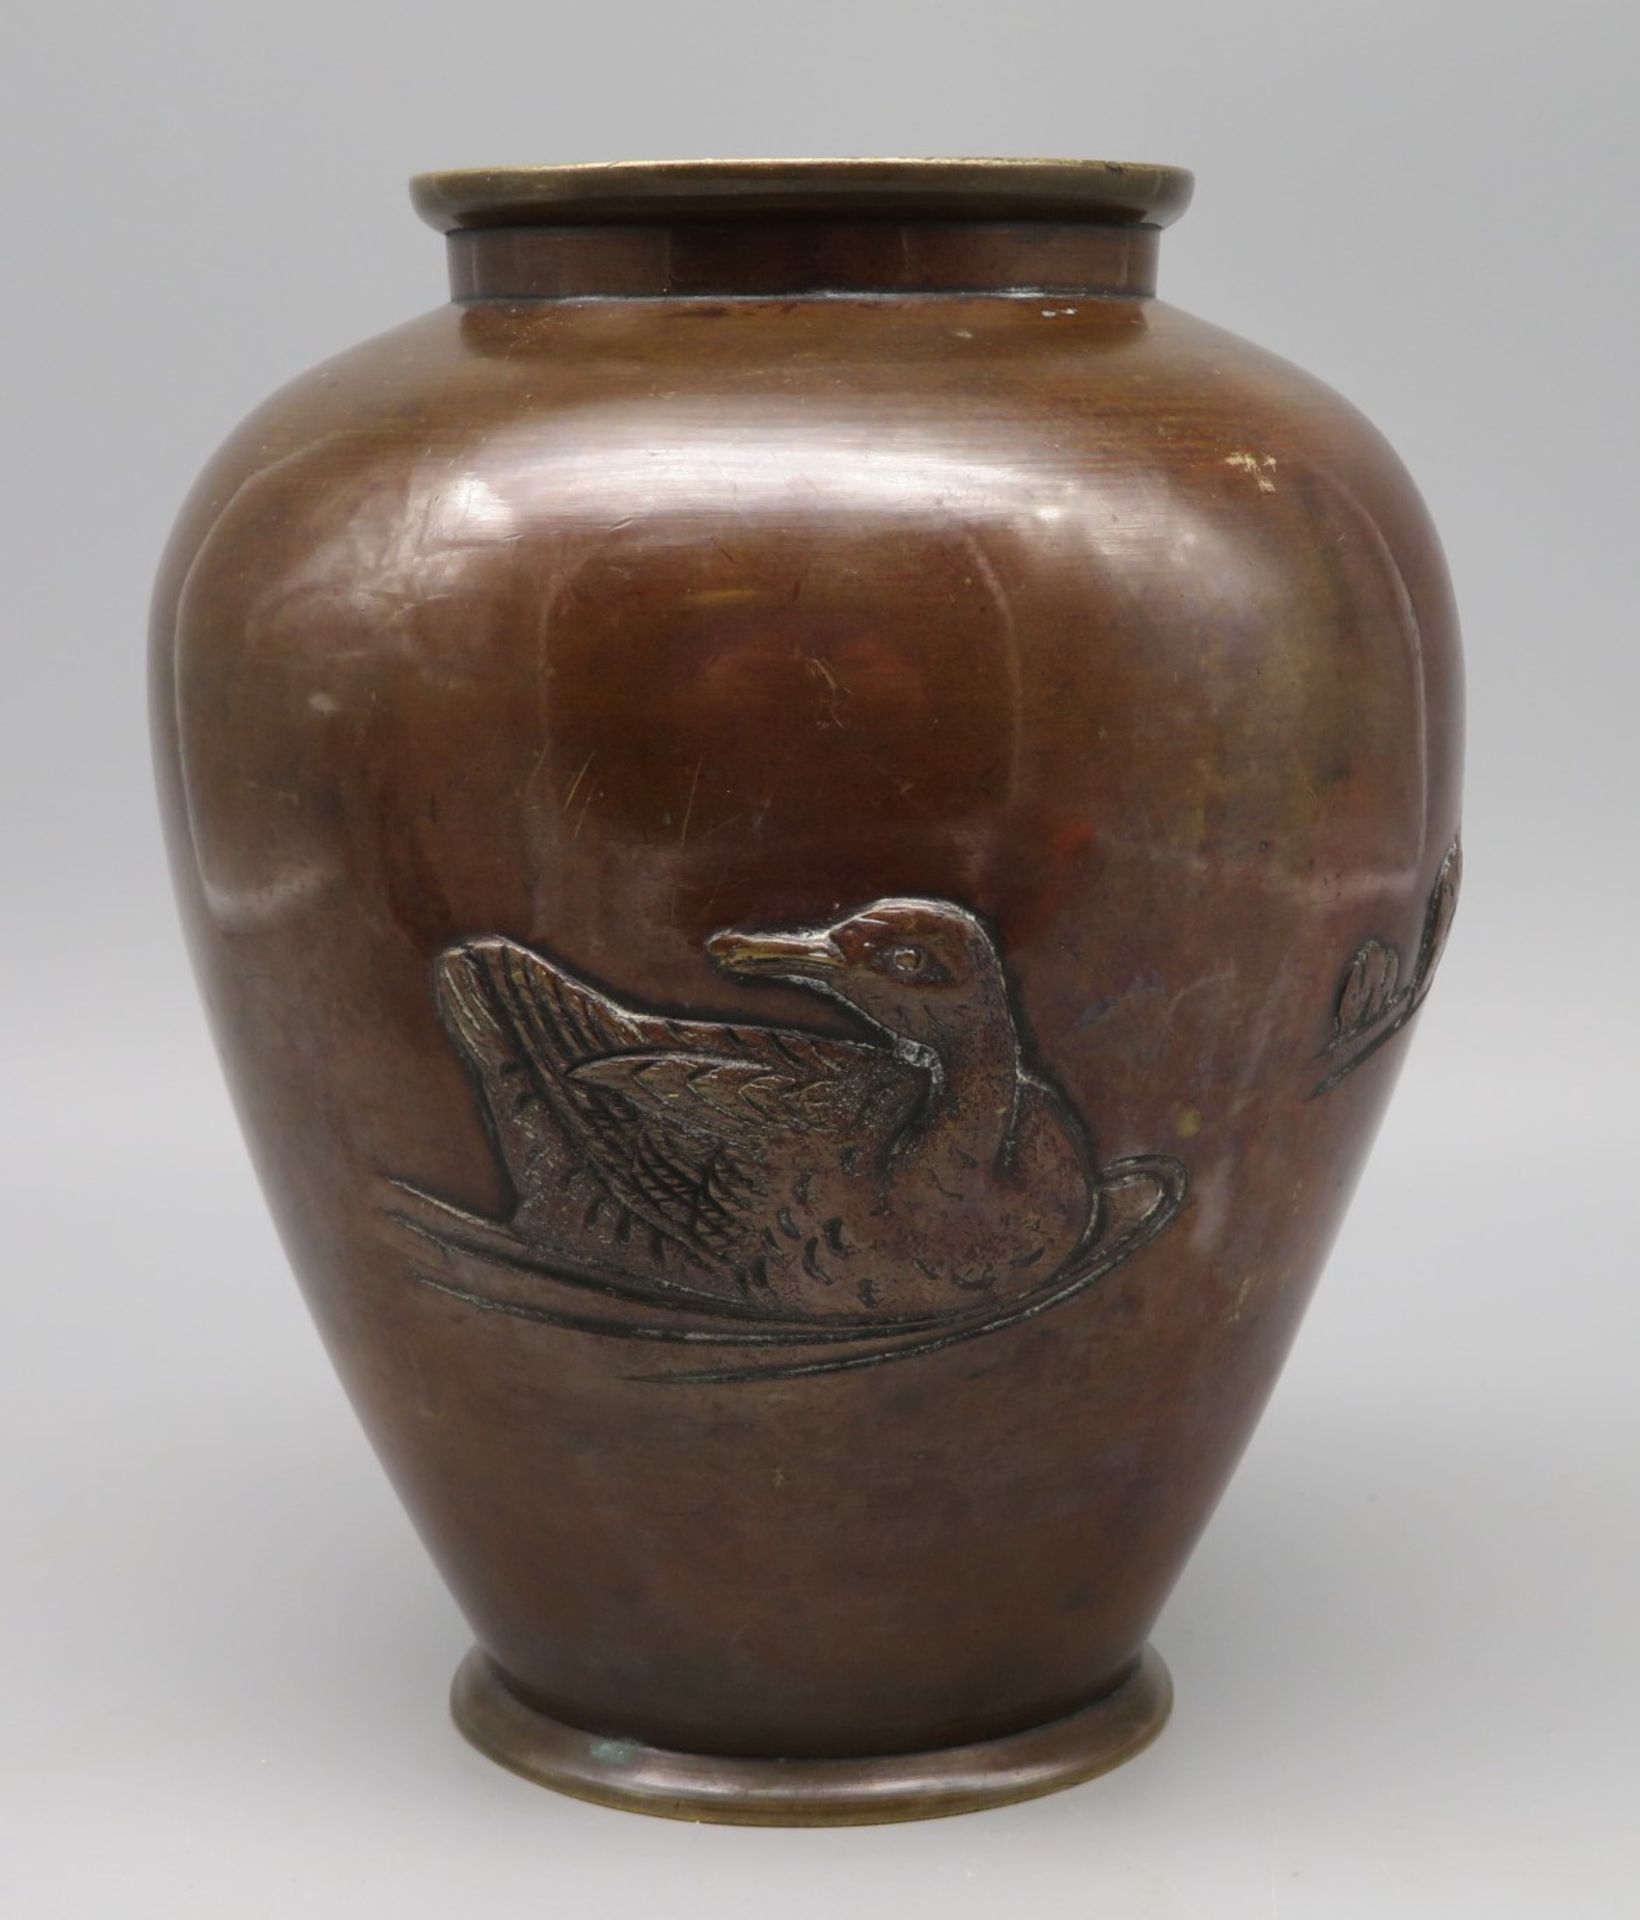 Vase, Japan, 1. Hälfte 20. Jahrhundert, Bronze, schauseitig mit reliefierter, schwimmender Ente, h